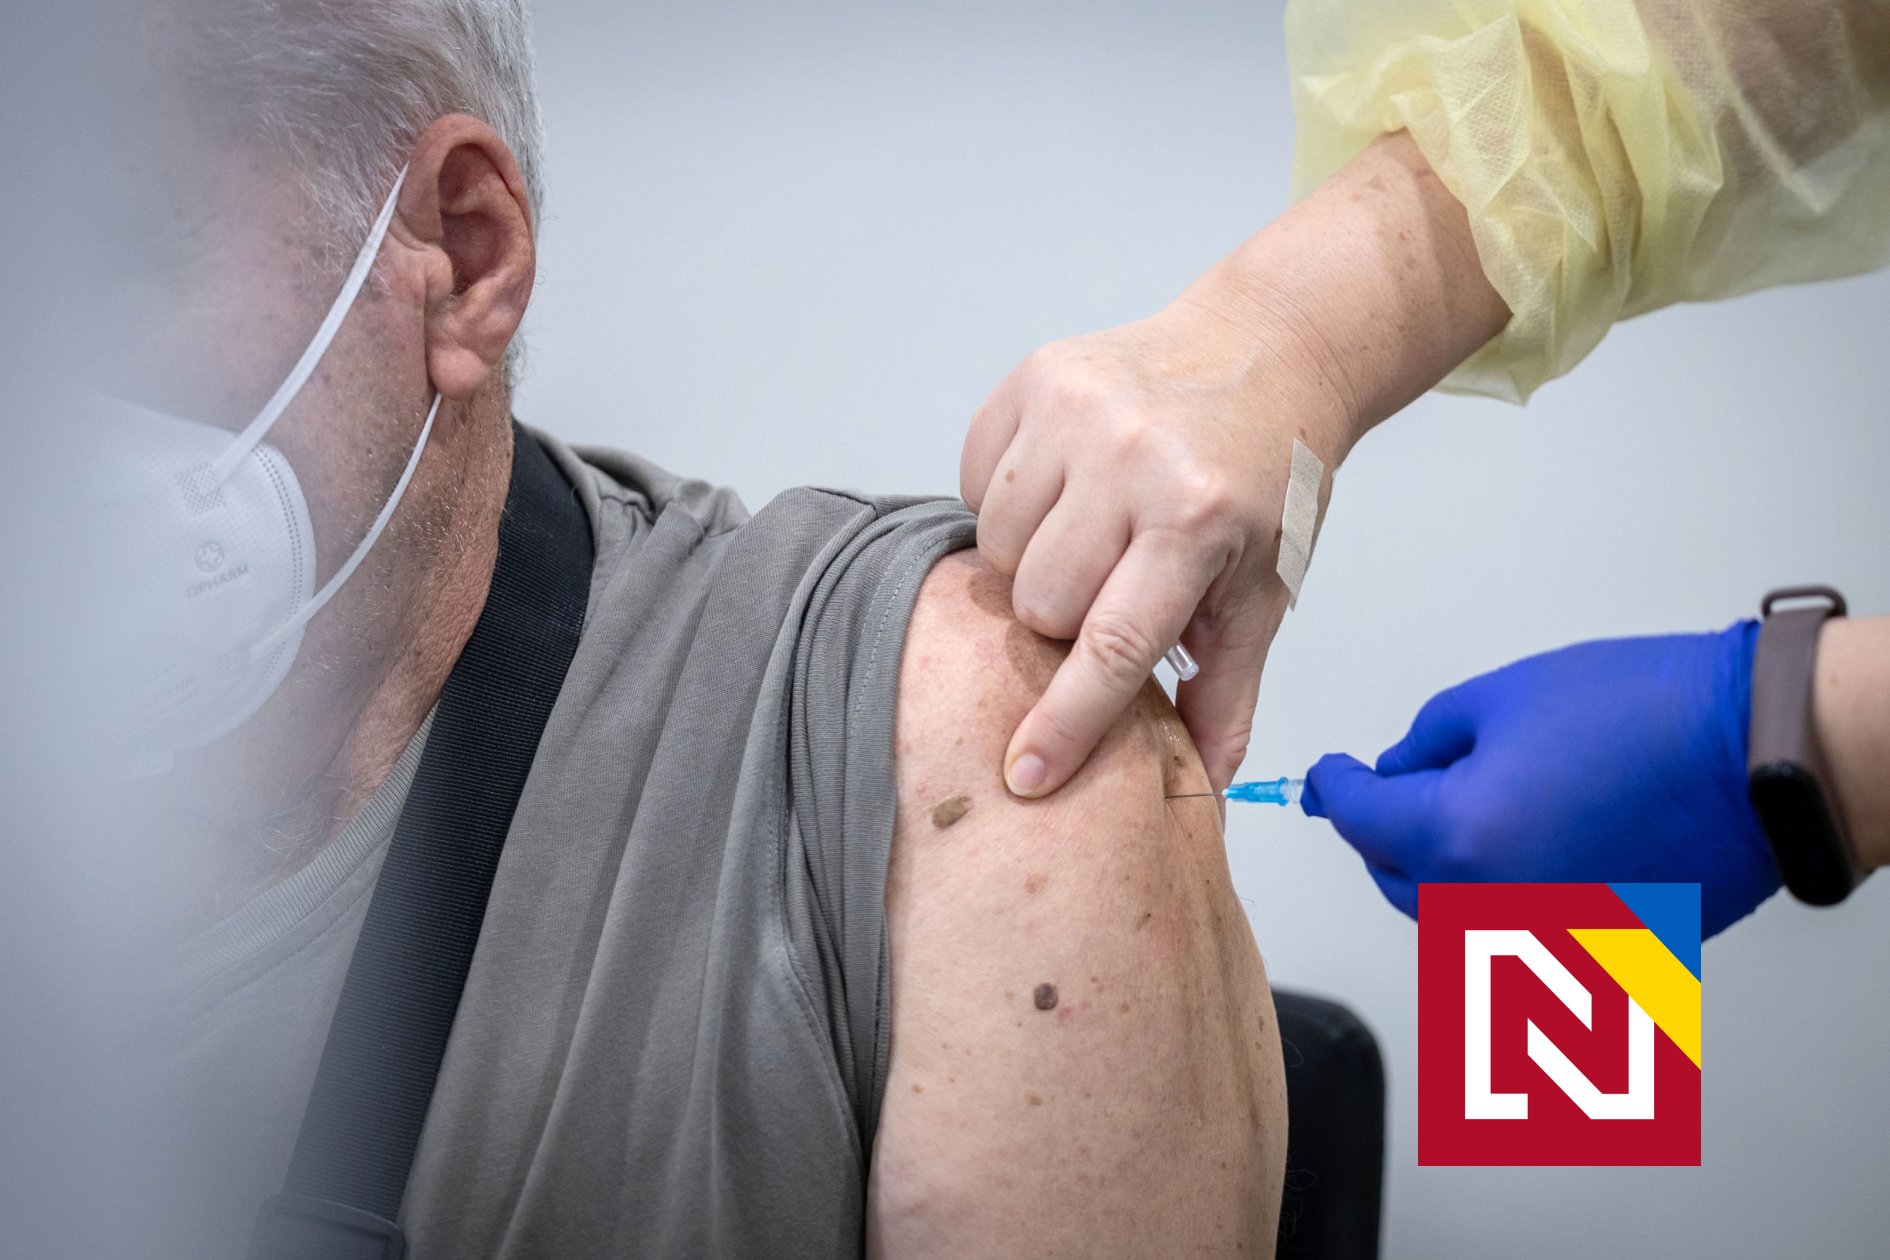 Vlani sa proti chrípke zaočkovalo do päť percent ľudí. Nezaočkovaní si nevážia vlastné zdravie, vraví odborníčka